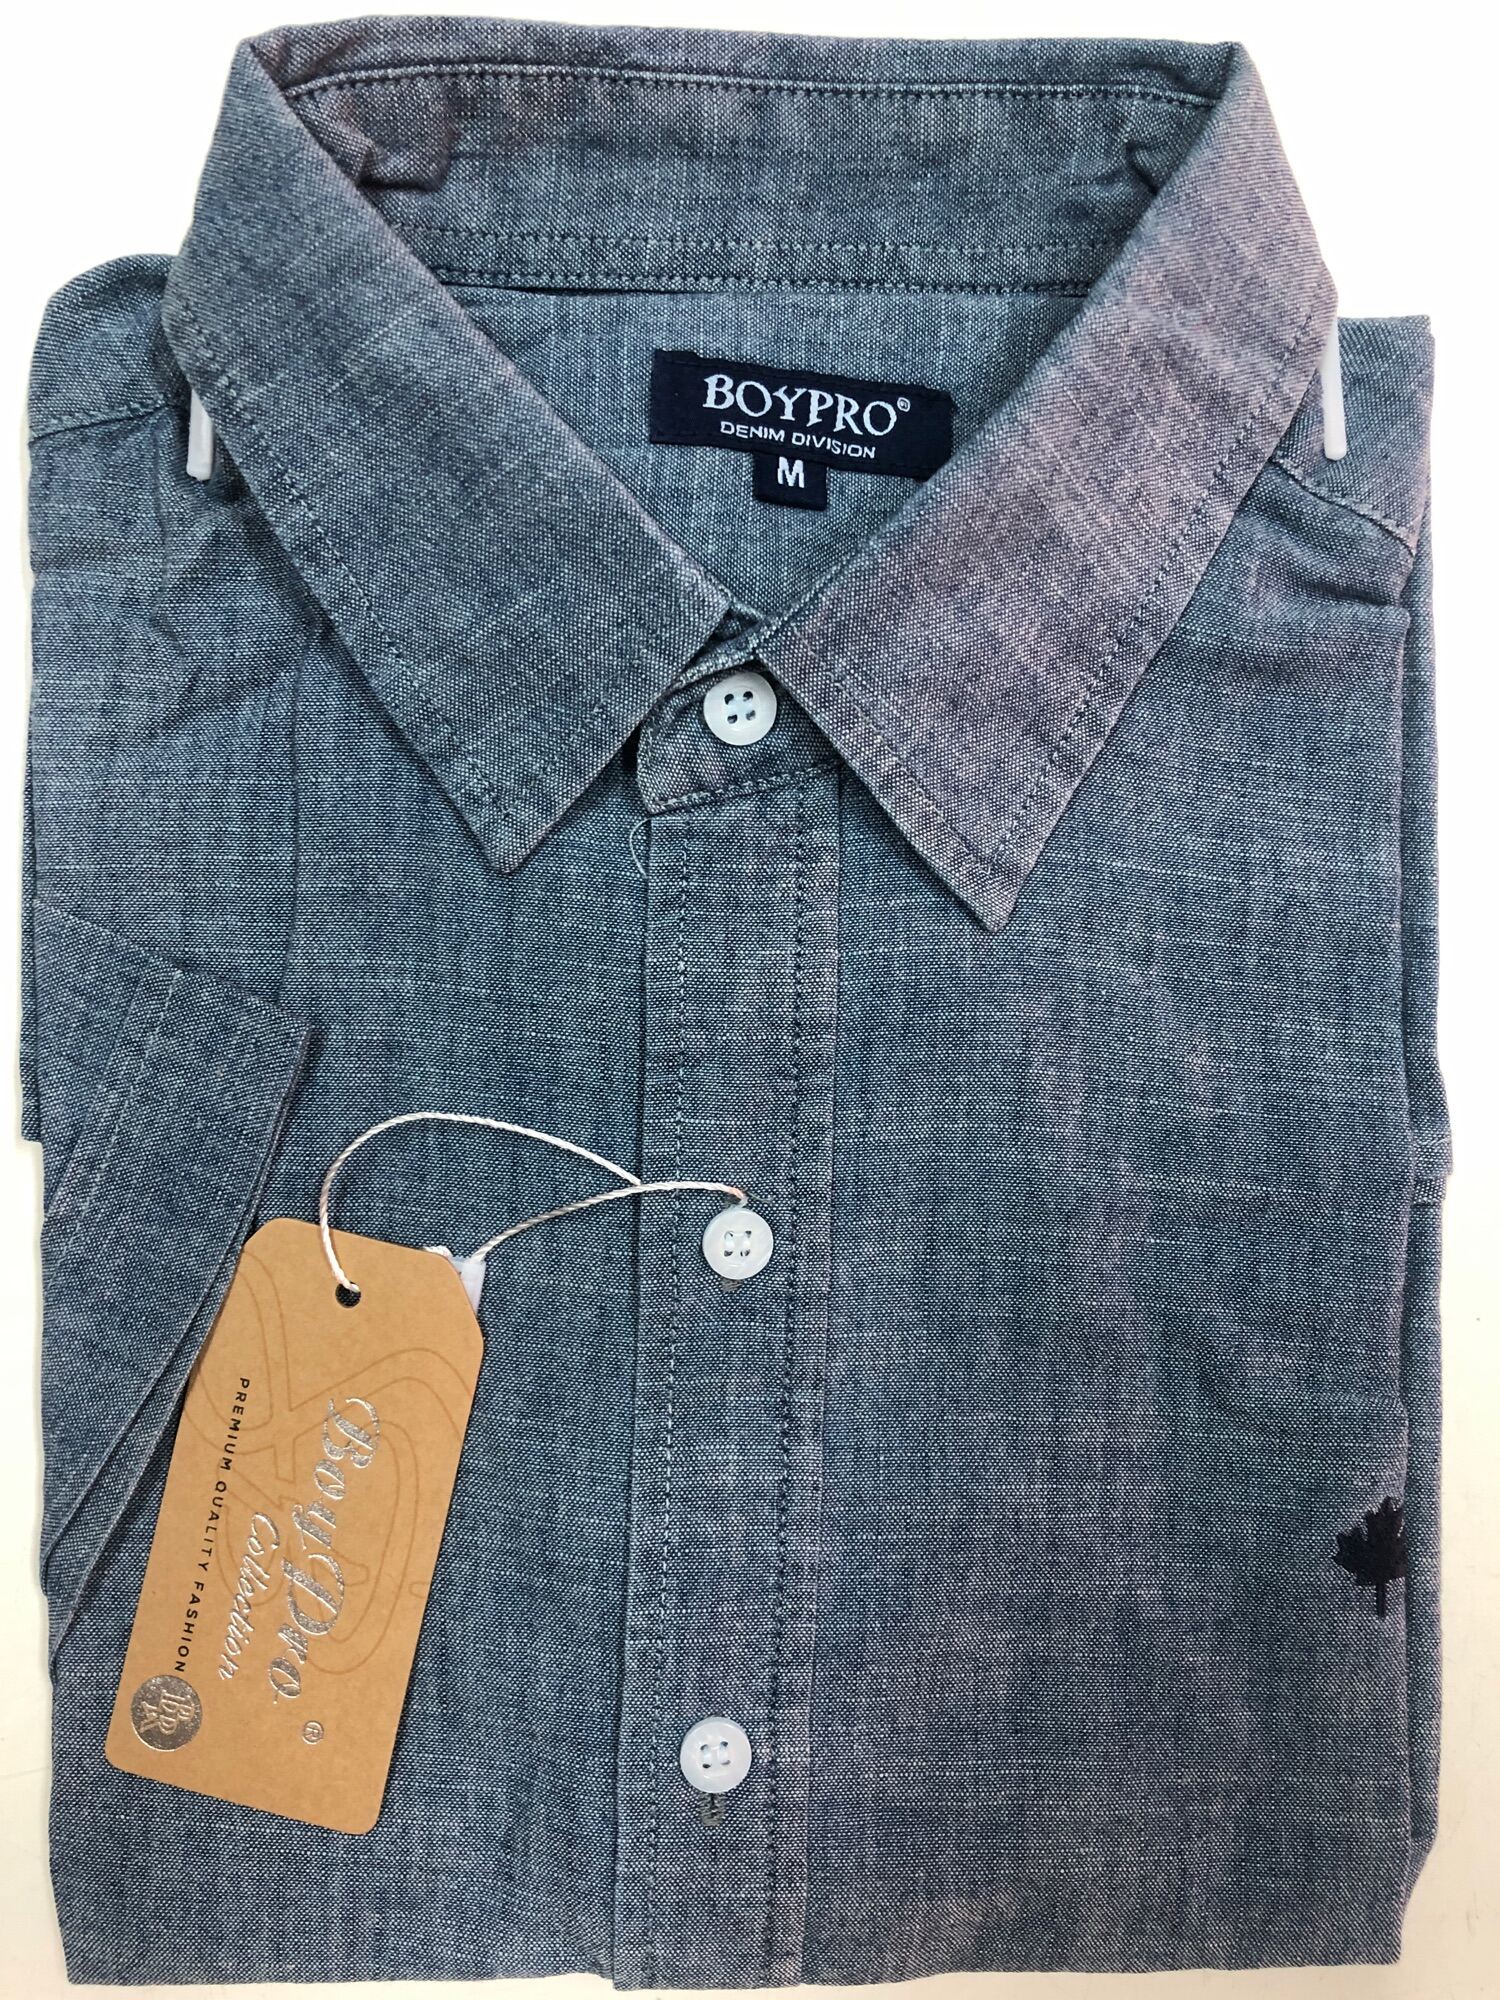 Áo Sơ Mi Tay Ngắn Cotton Jeans Màu Xanh FO012 [GIẢM 10% GIÁ TRỊ ĐƠN HÀNG KHI MUA 250K] thumbnail